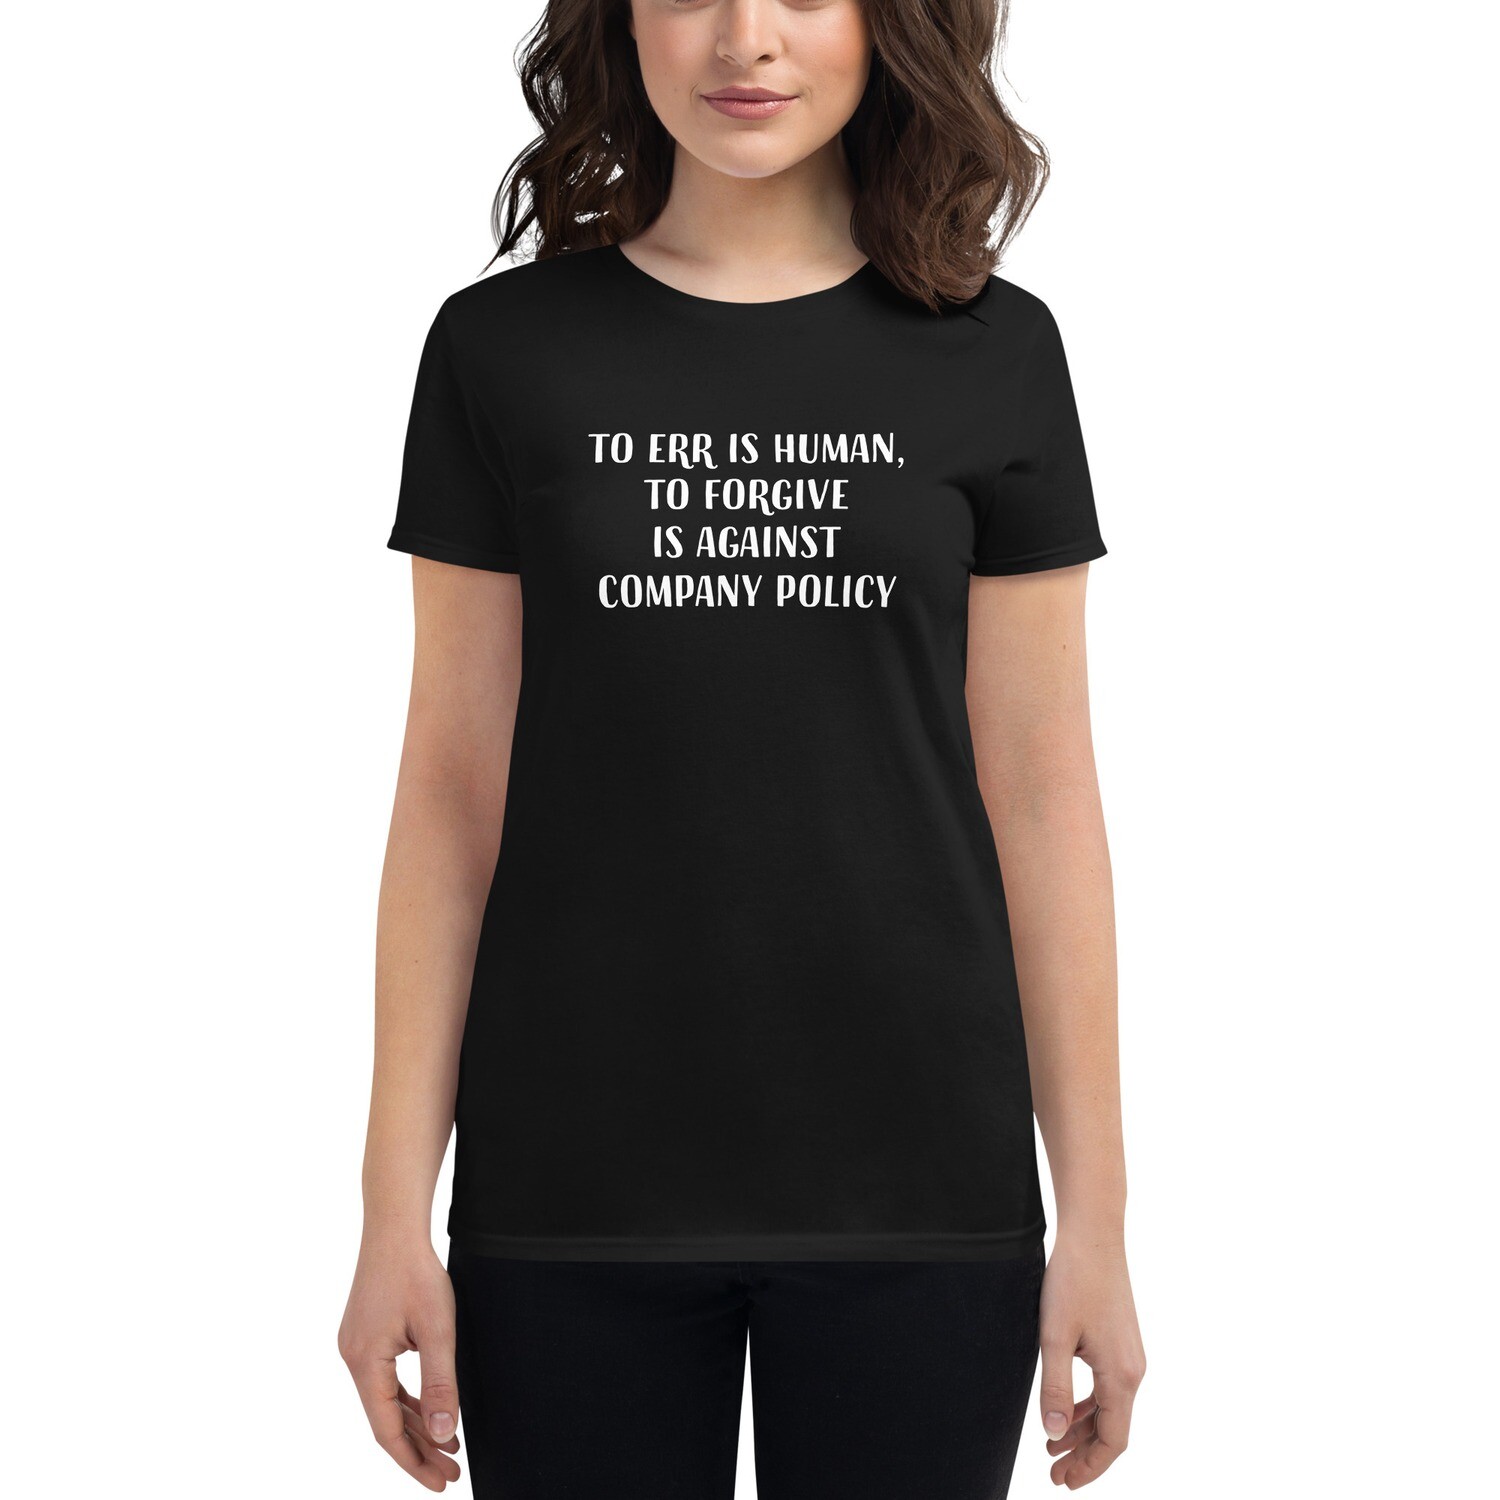 Err is Human Women's short sleeve t-shirt